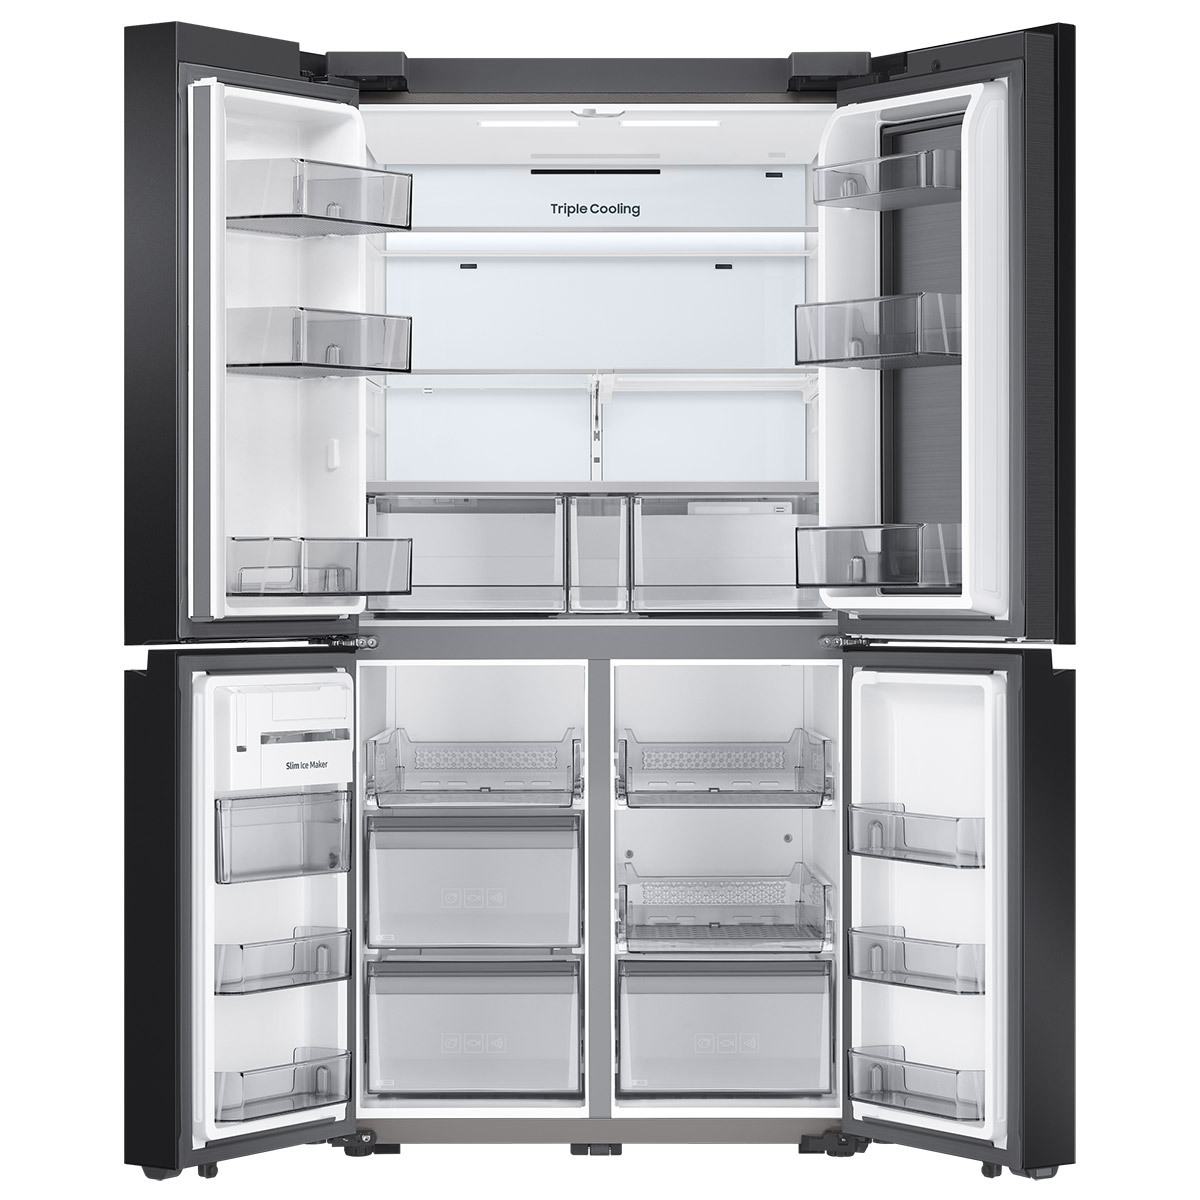 삼성 비스포크 쇼케이스 냉장고 870L-글램핑크화이트